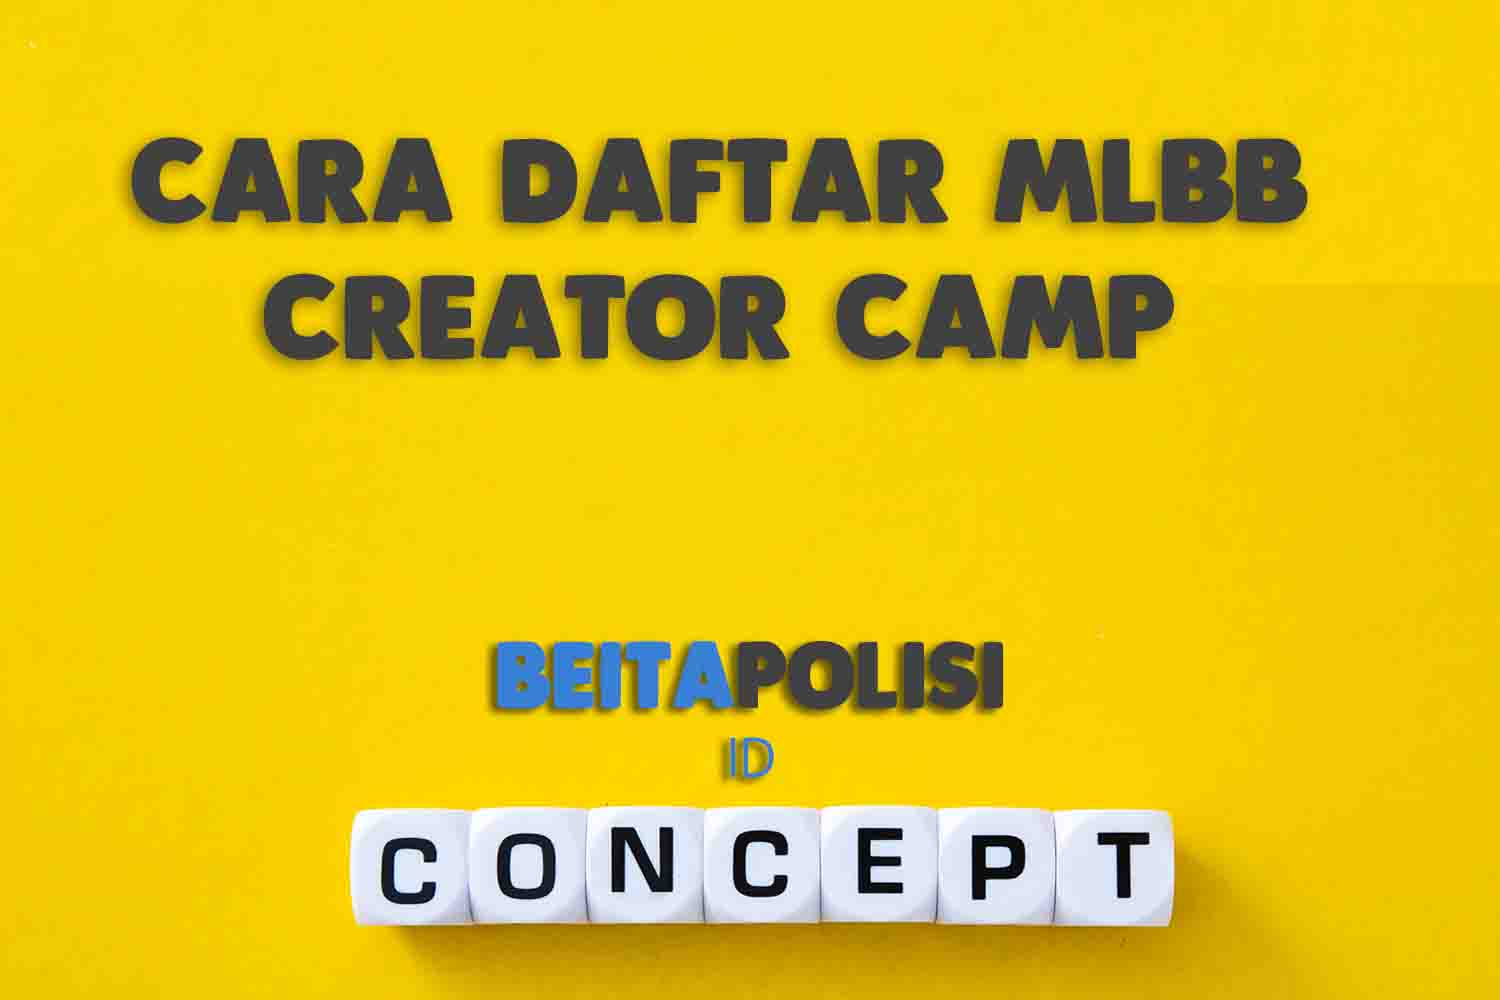 Cara Daftar Mlbb Creator Camp